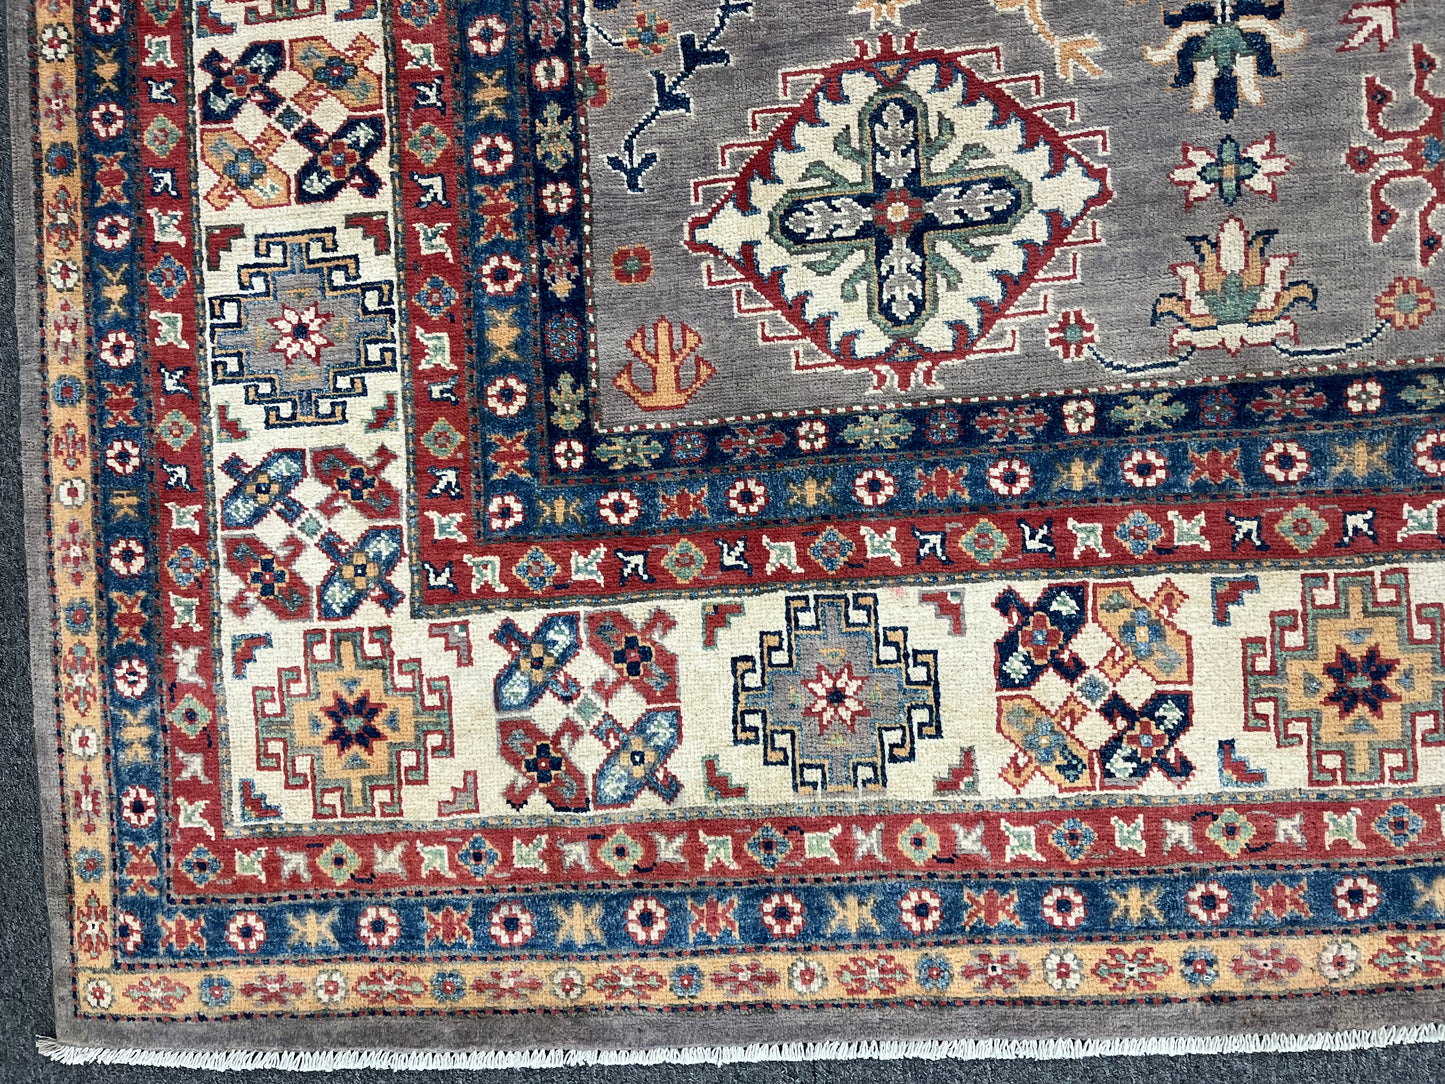 Gray Kazak 9X12 Handmade Wool Rug # 13721